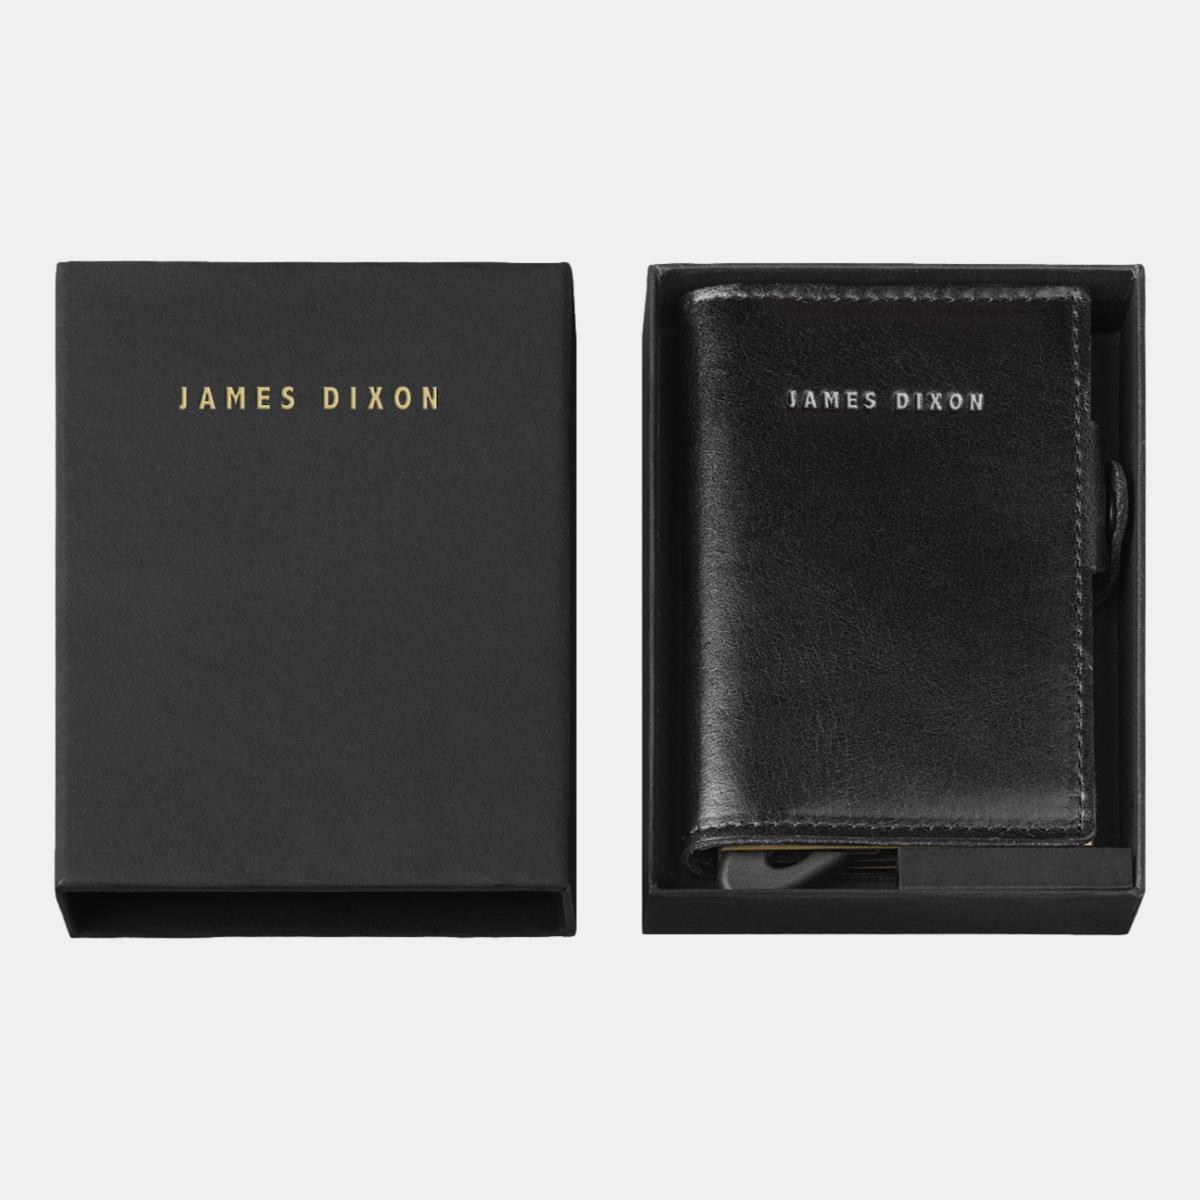 jd0285 james dixon boton classic black silver wallet box